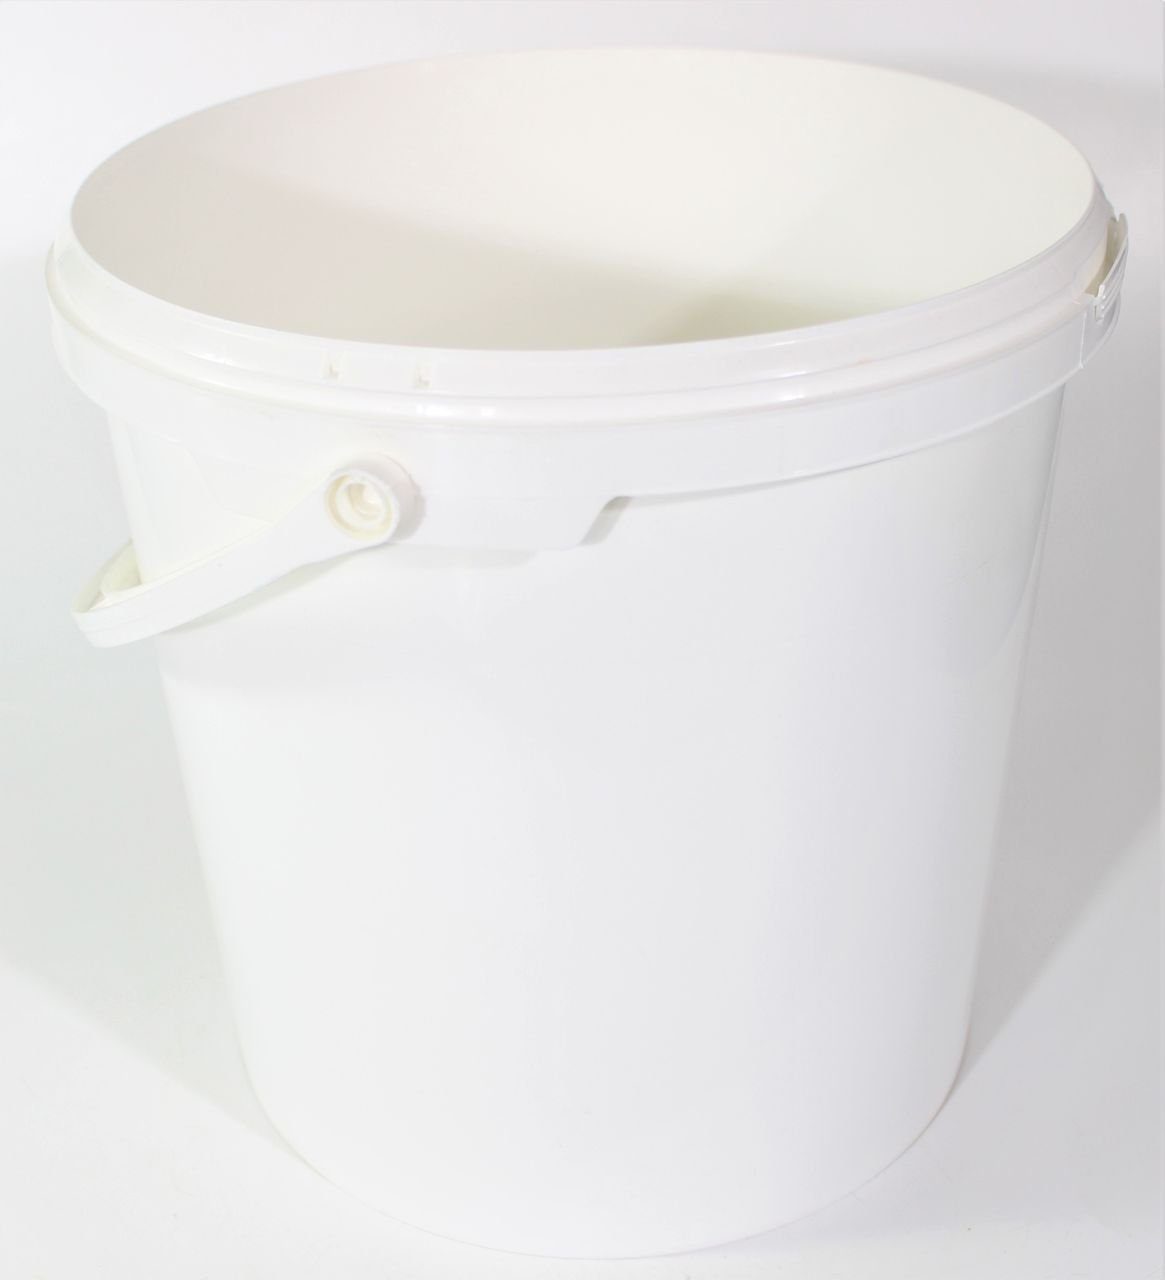 myMAW Auffangbehälter 5x Eimer ohne Deckel 10 Liter Leereimer Behälter Kunststoffeimer… | Vorratsdosen